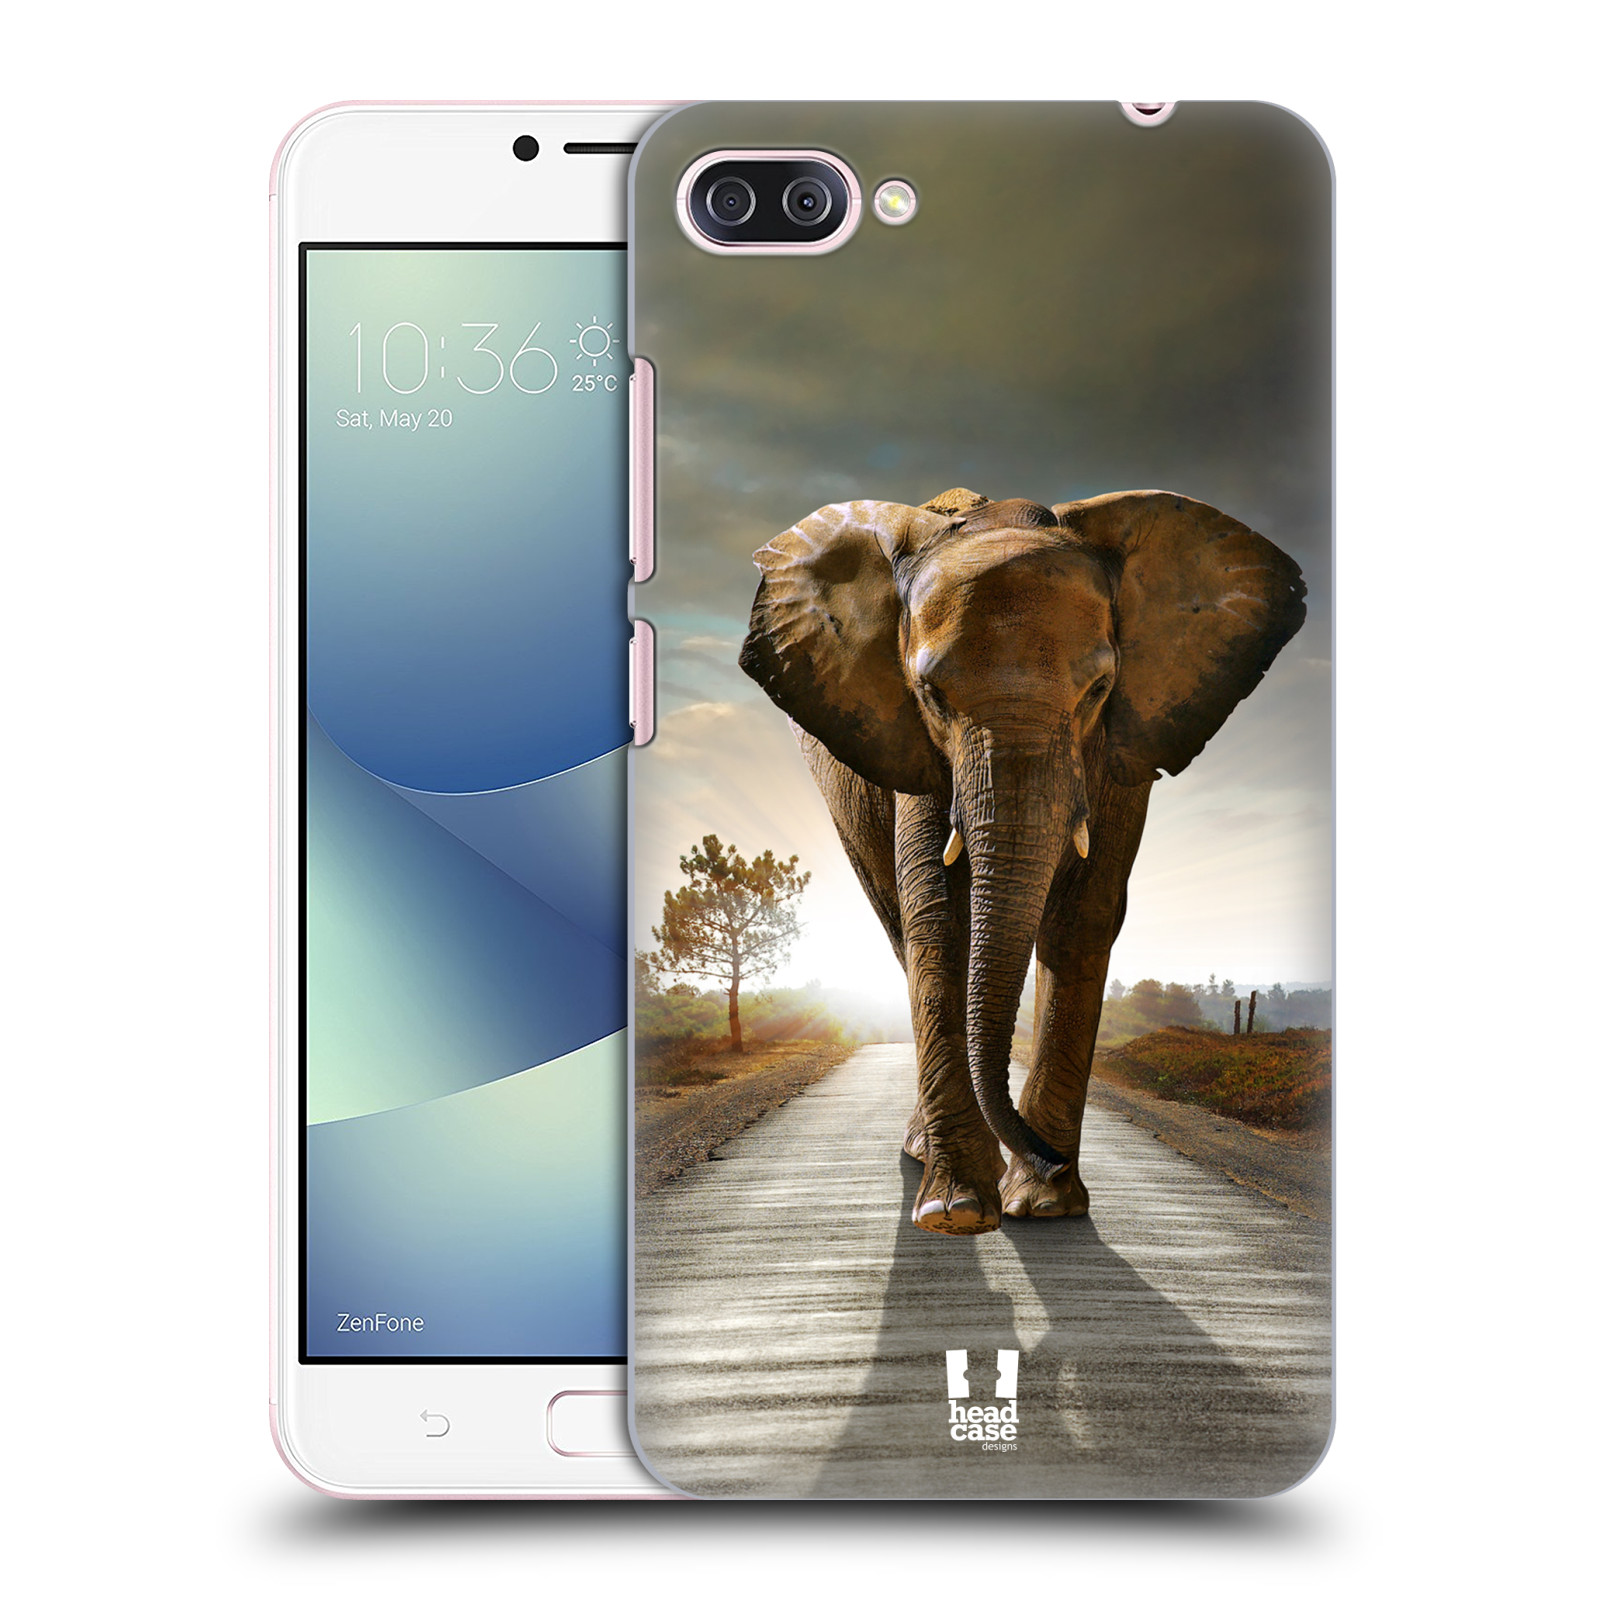 Zadní obal pro mobil Asus Zenfone 4 MAX / 4 MAX PRO (ZC554KL) - HEAD CASE - Svět zvířat kráčející slon